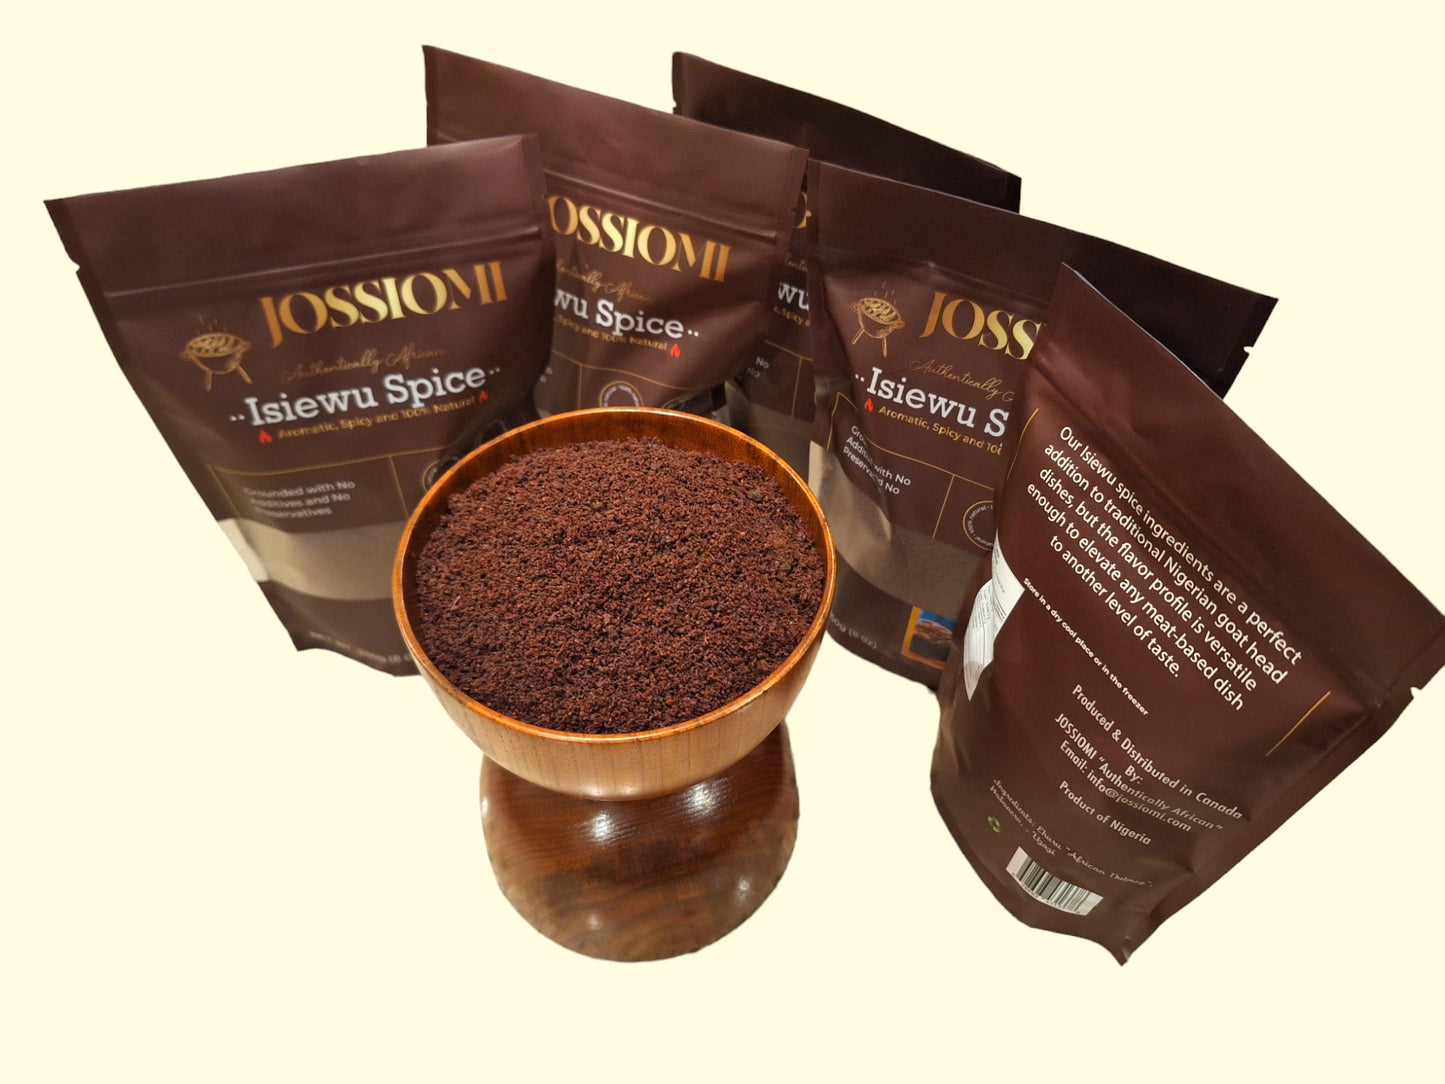 Grounded Isi-Ewu Spice - 100% Authentic - 250g(8oz)